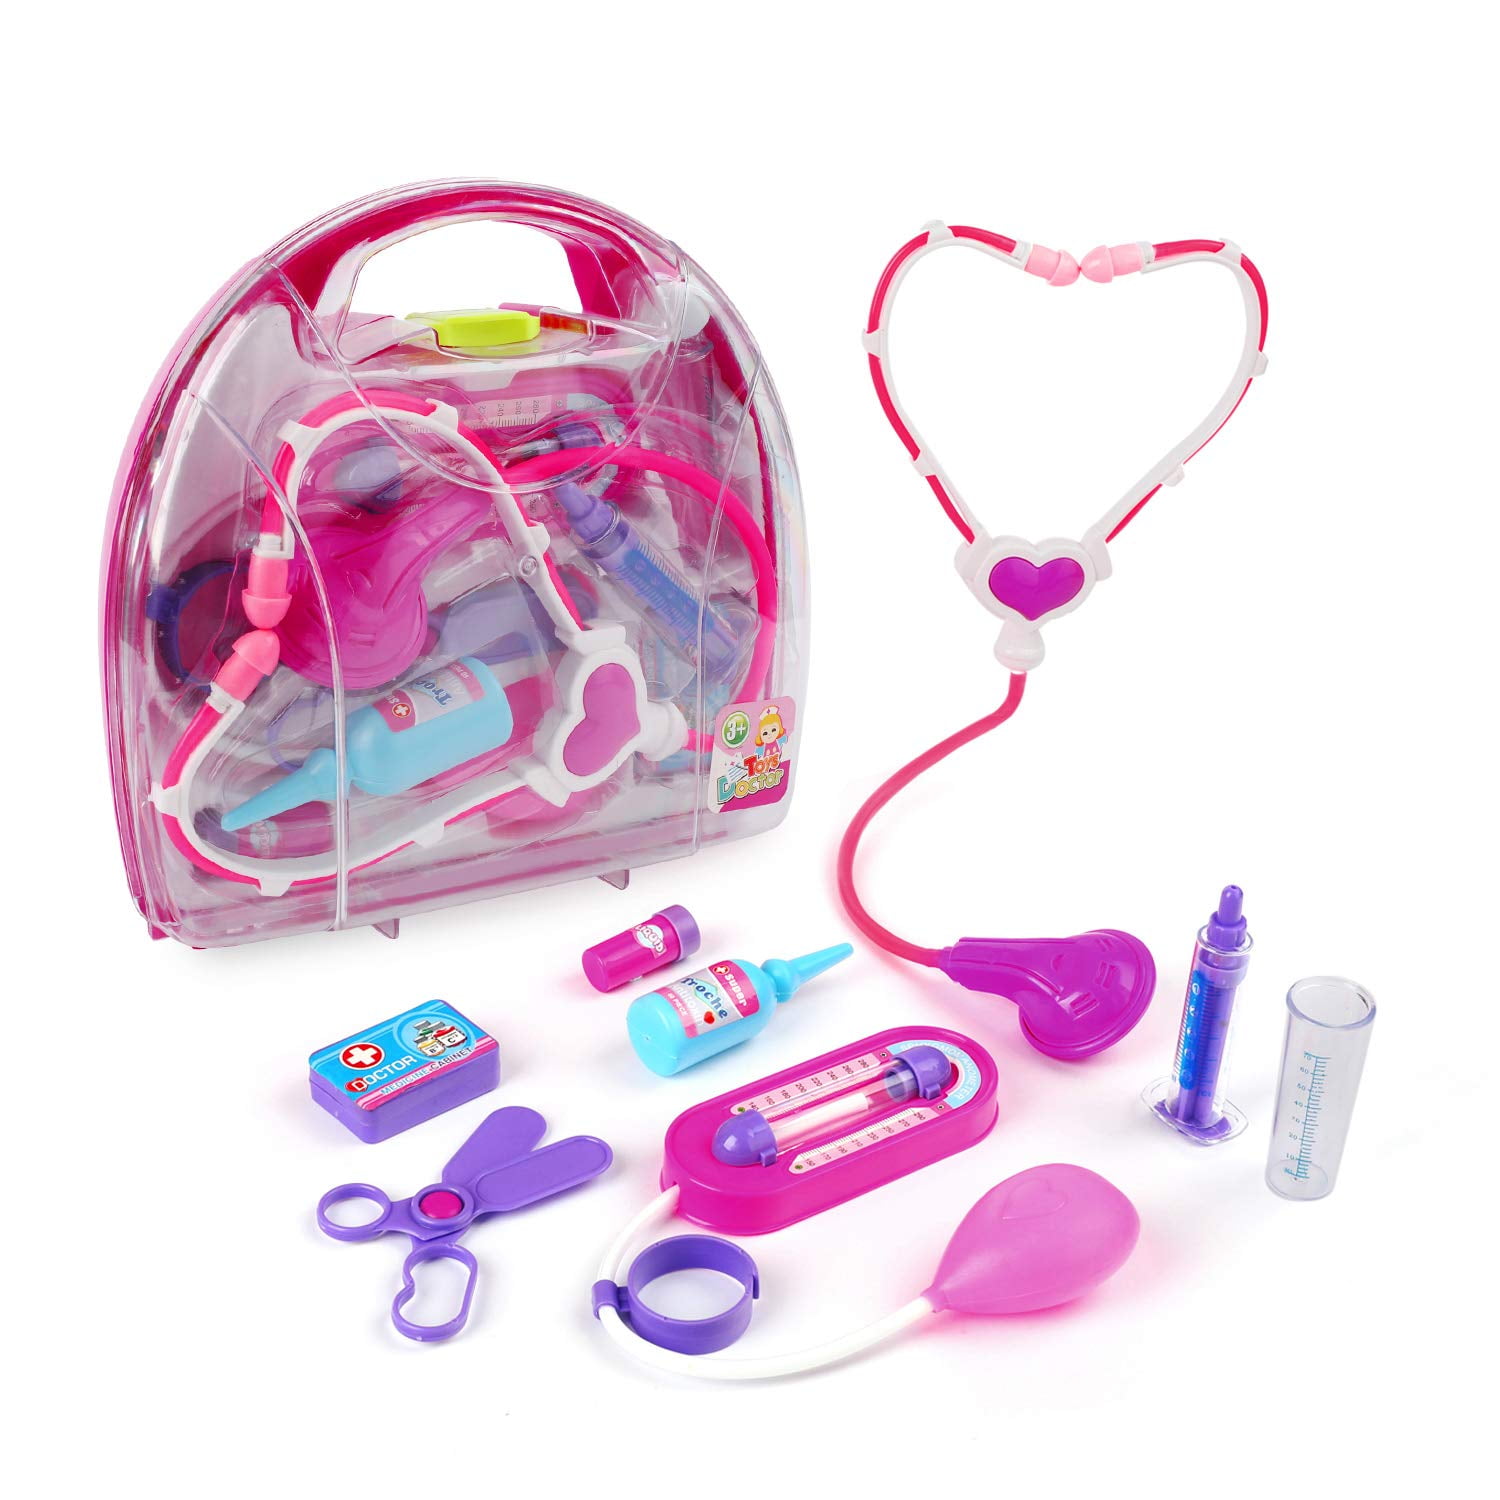 Kids Doctor Nurse Kitchen Pretend Role Play Toy Set Boy Girl Birthday Gift Case 